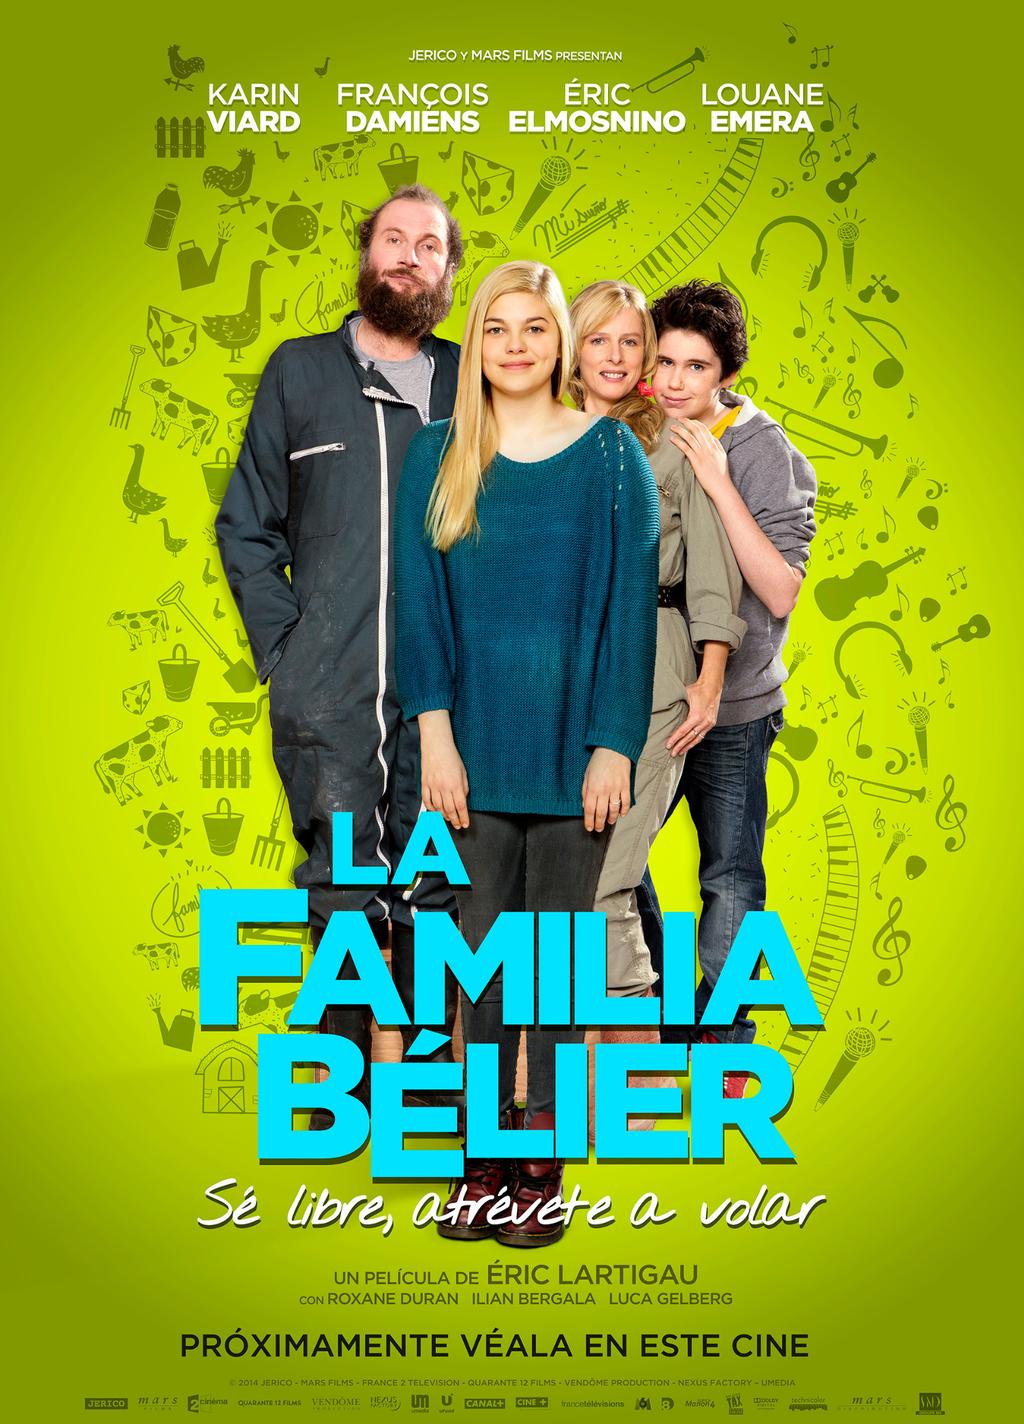 est_familia belier_poster